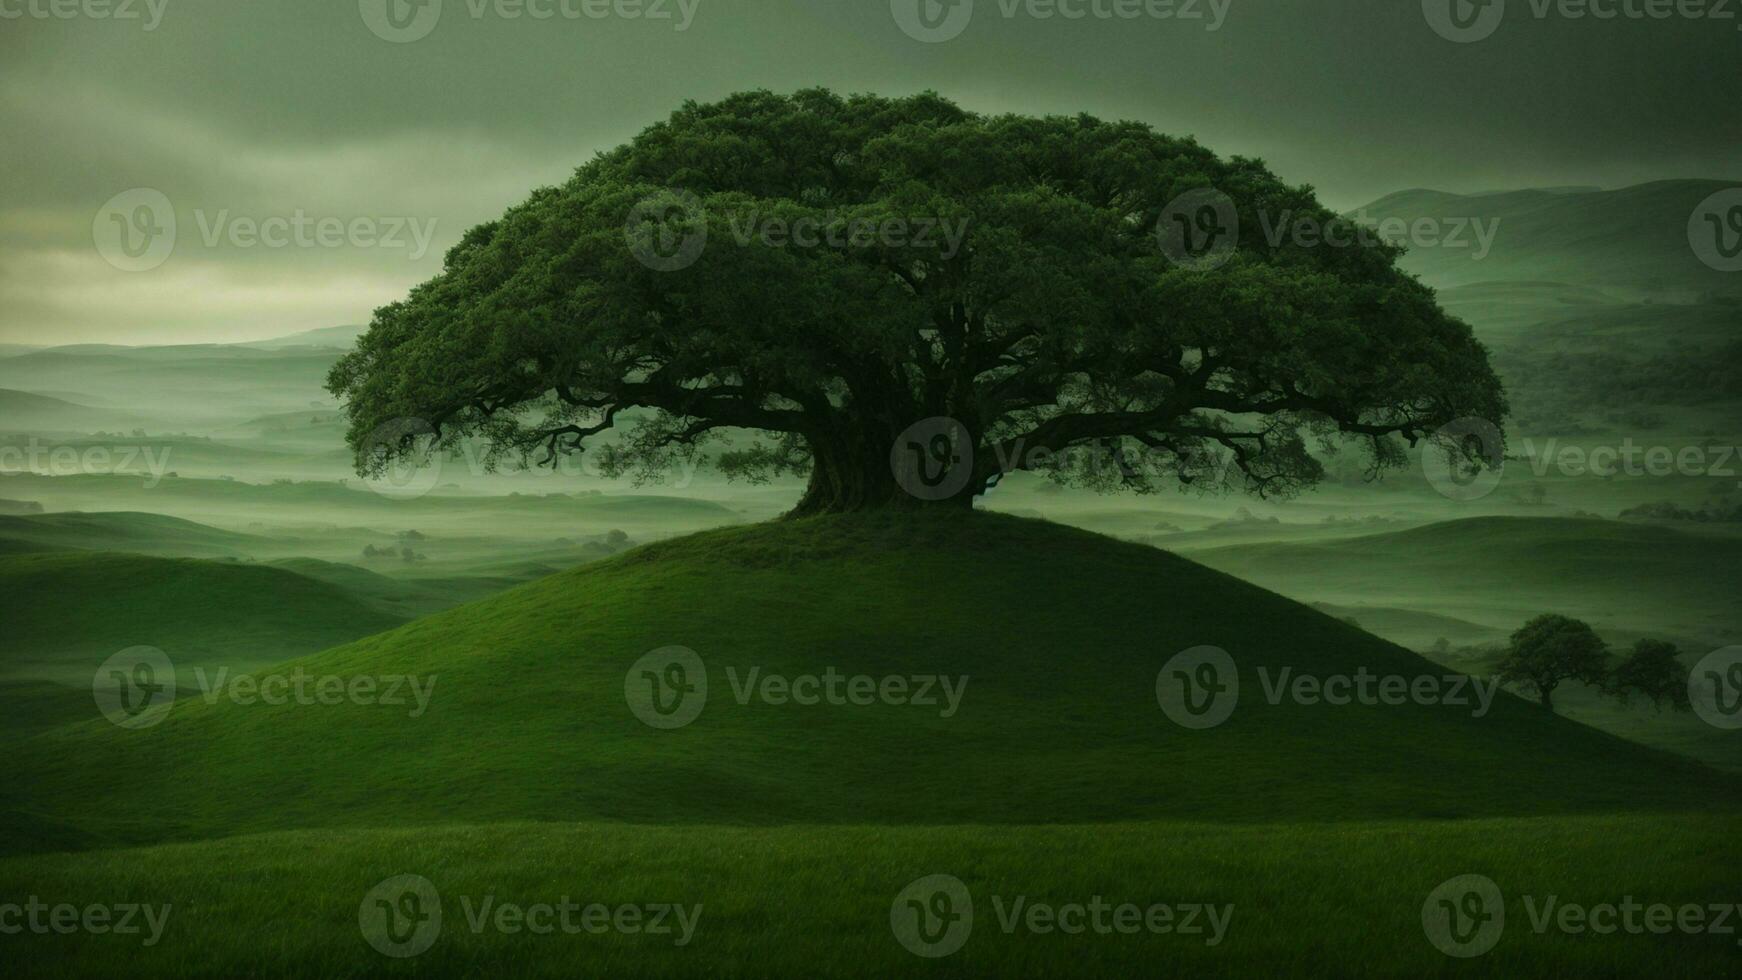 ai gegenereerd uitvinden een mythisch achtergrondverhaal voor de groen boom, incorporeren elementen van folklore en fantasie naar leg uit haar buitengewoon kwaliteiten en betekenis in de natuurlijk wereld. foto